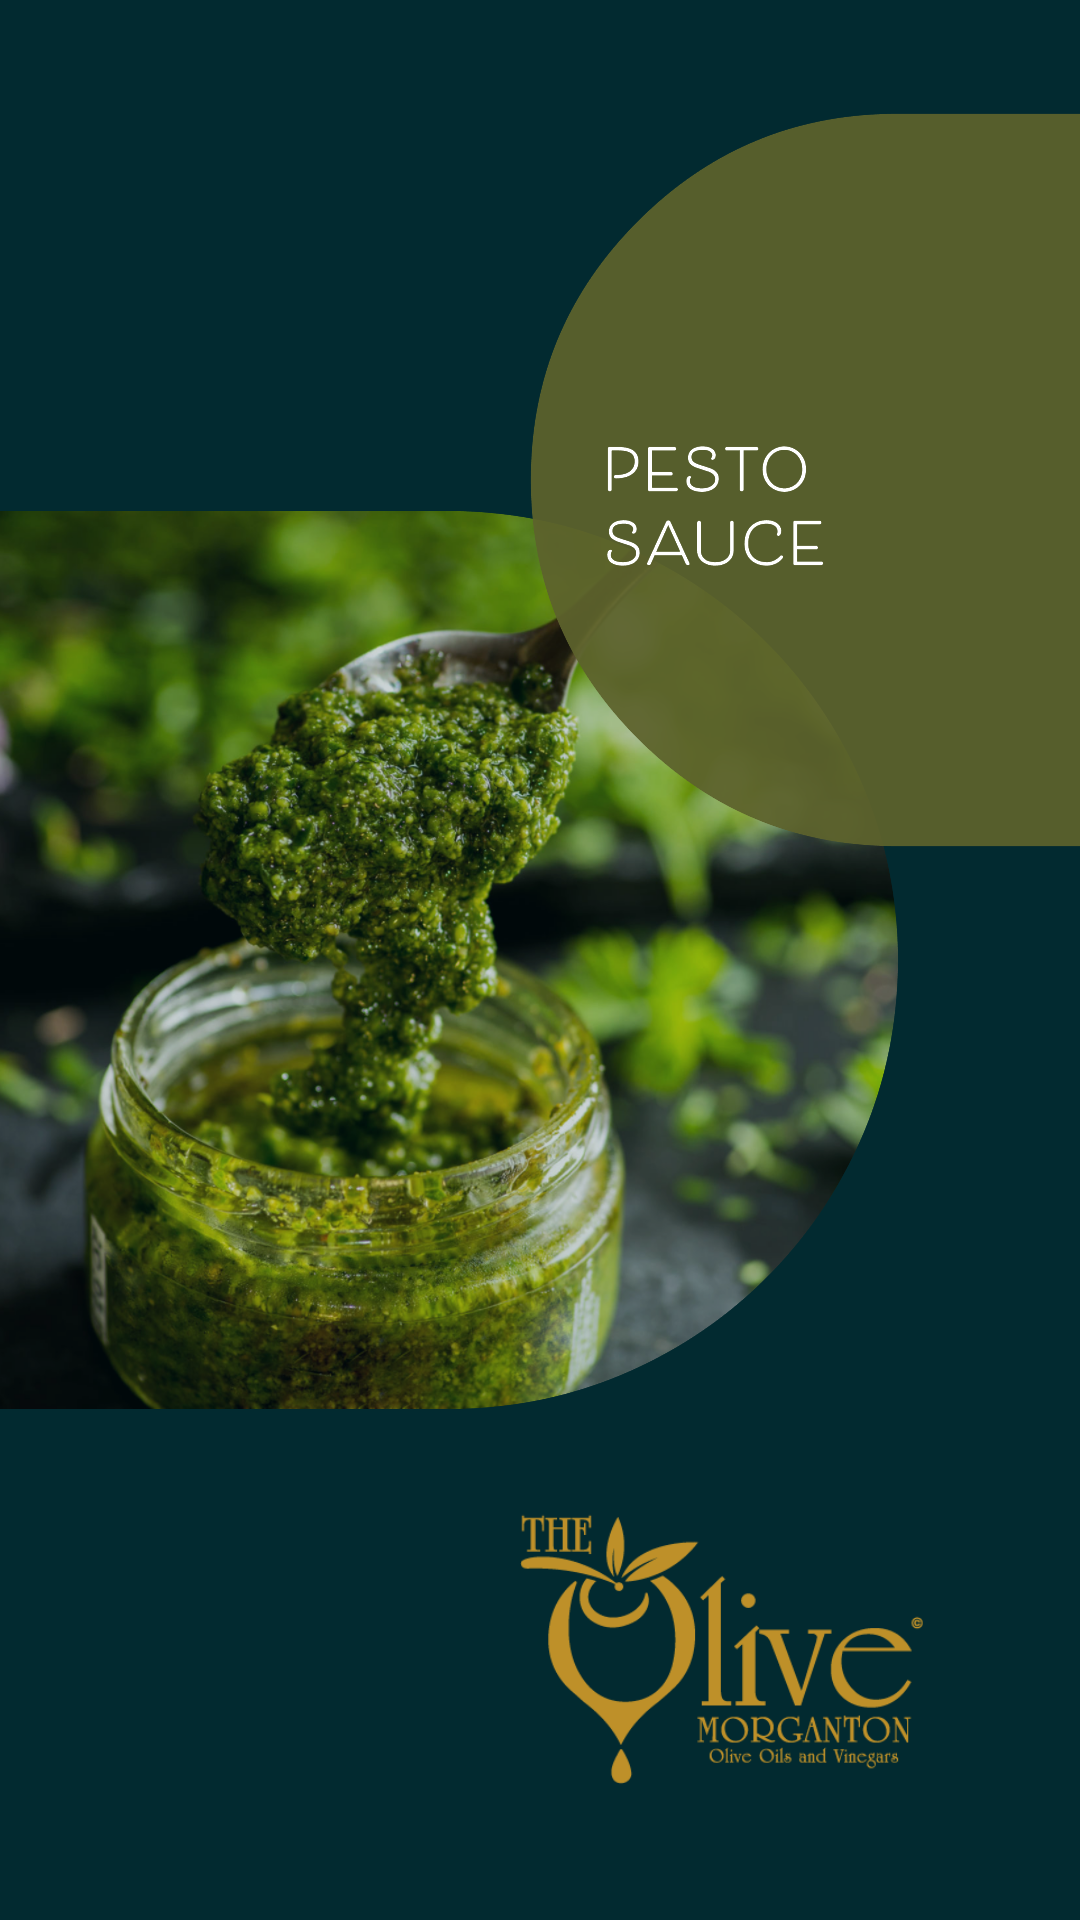 The Olive Pesto Sauce